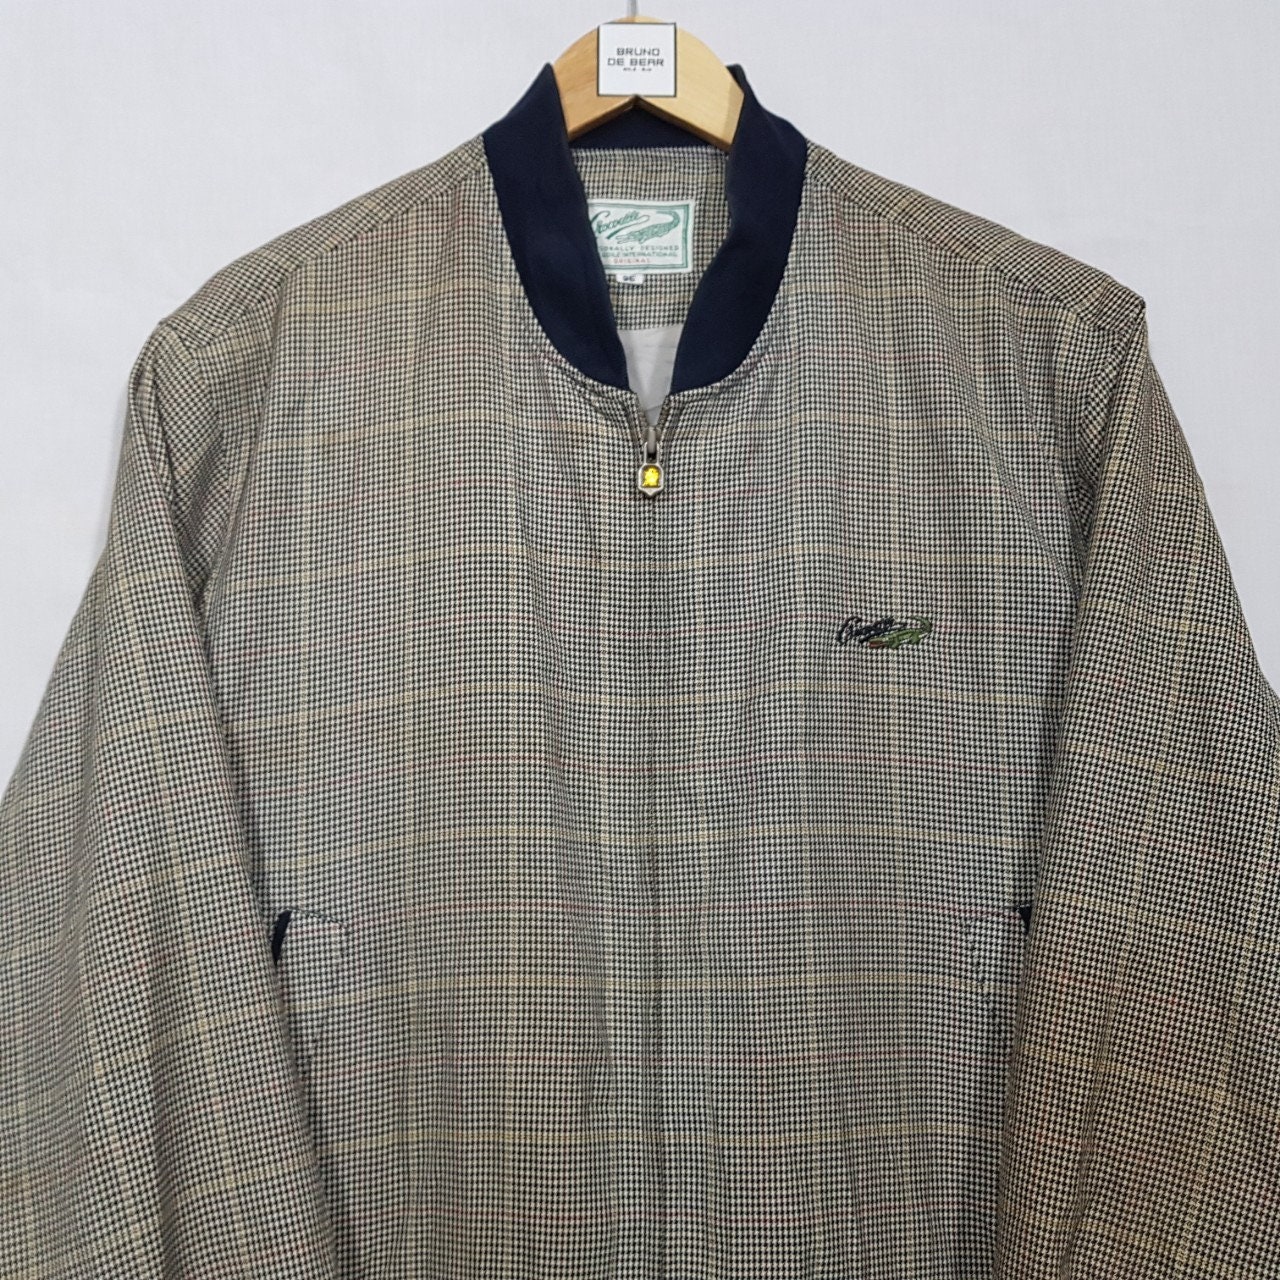 Vintage Crocodile Garments Bomber Men's Luxury Jacket Size Large